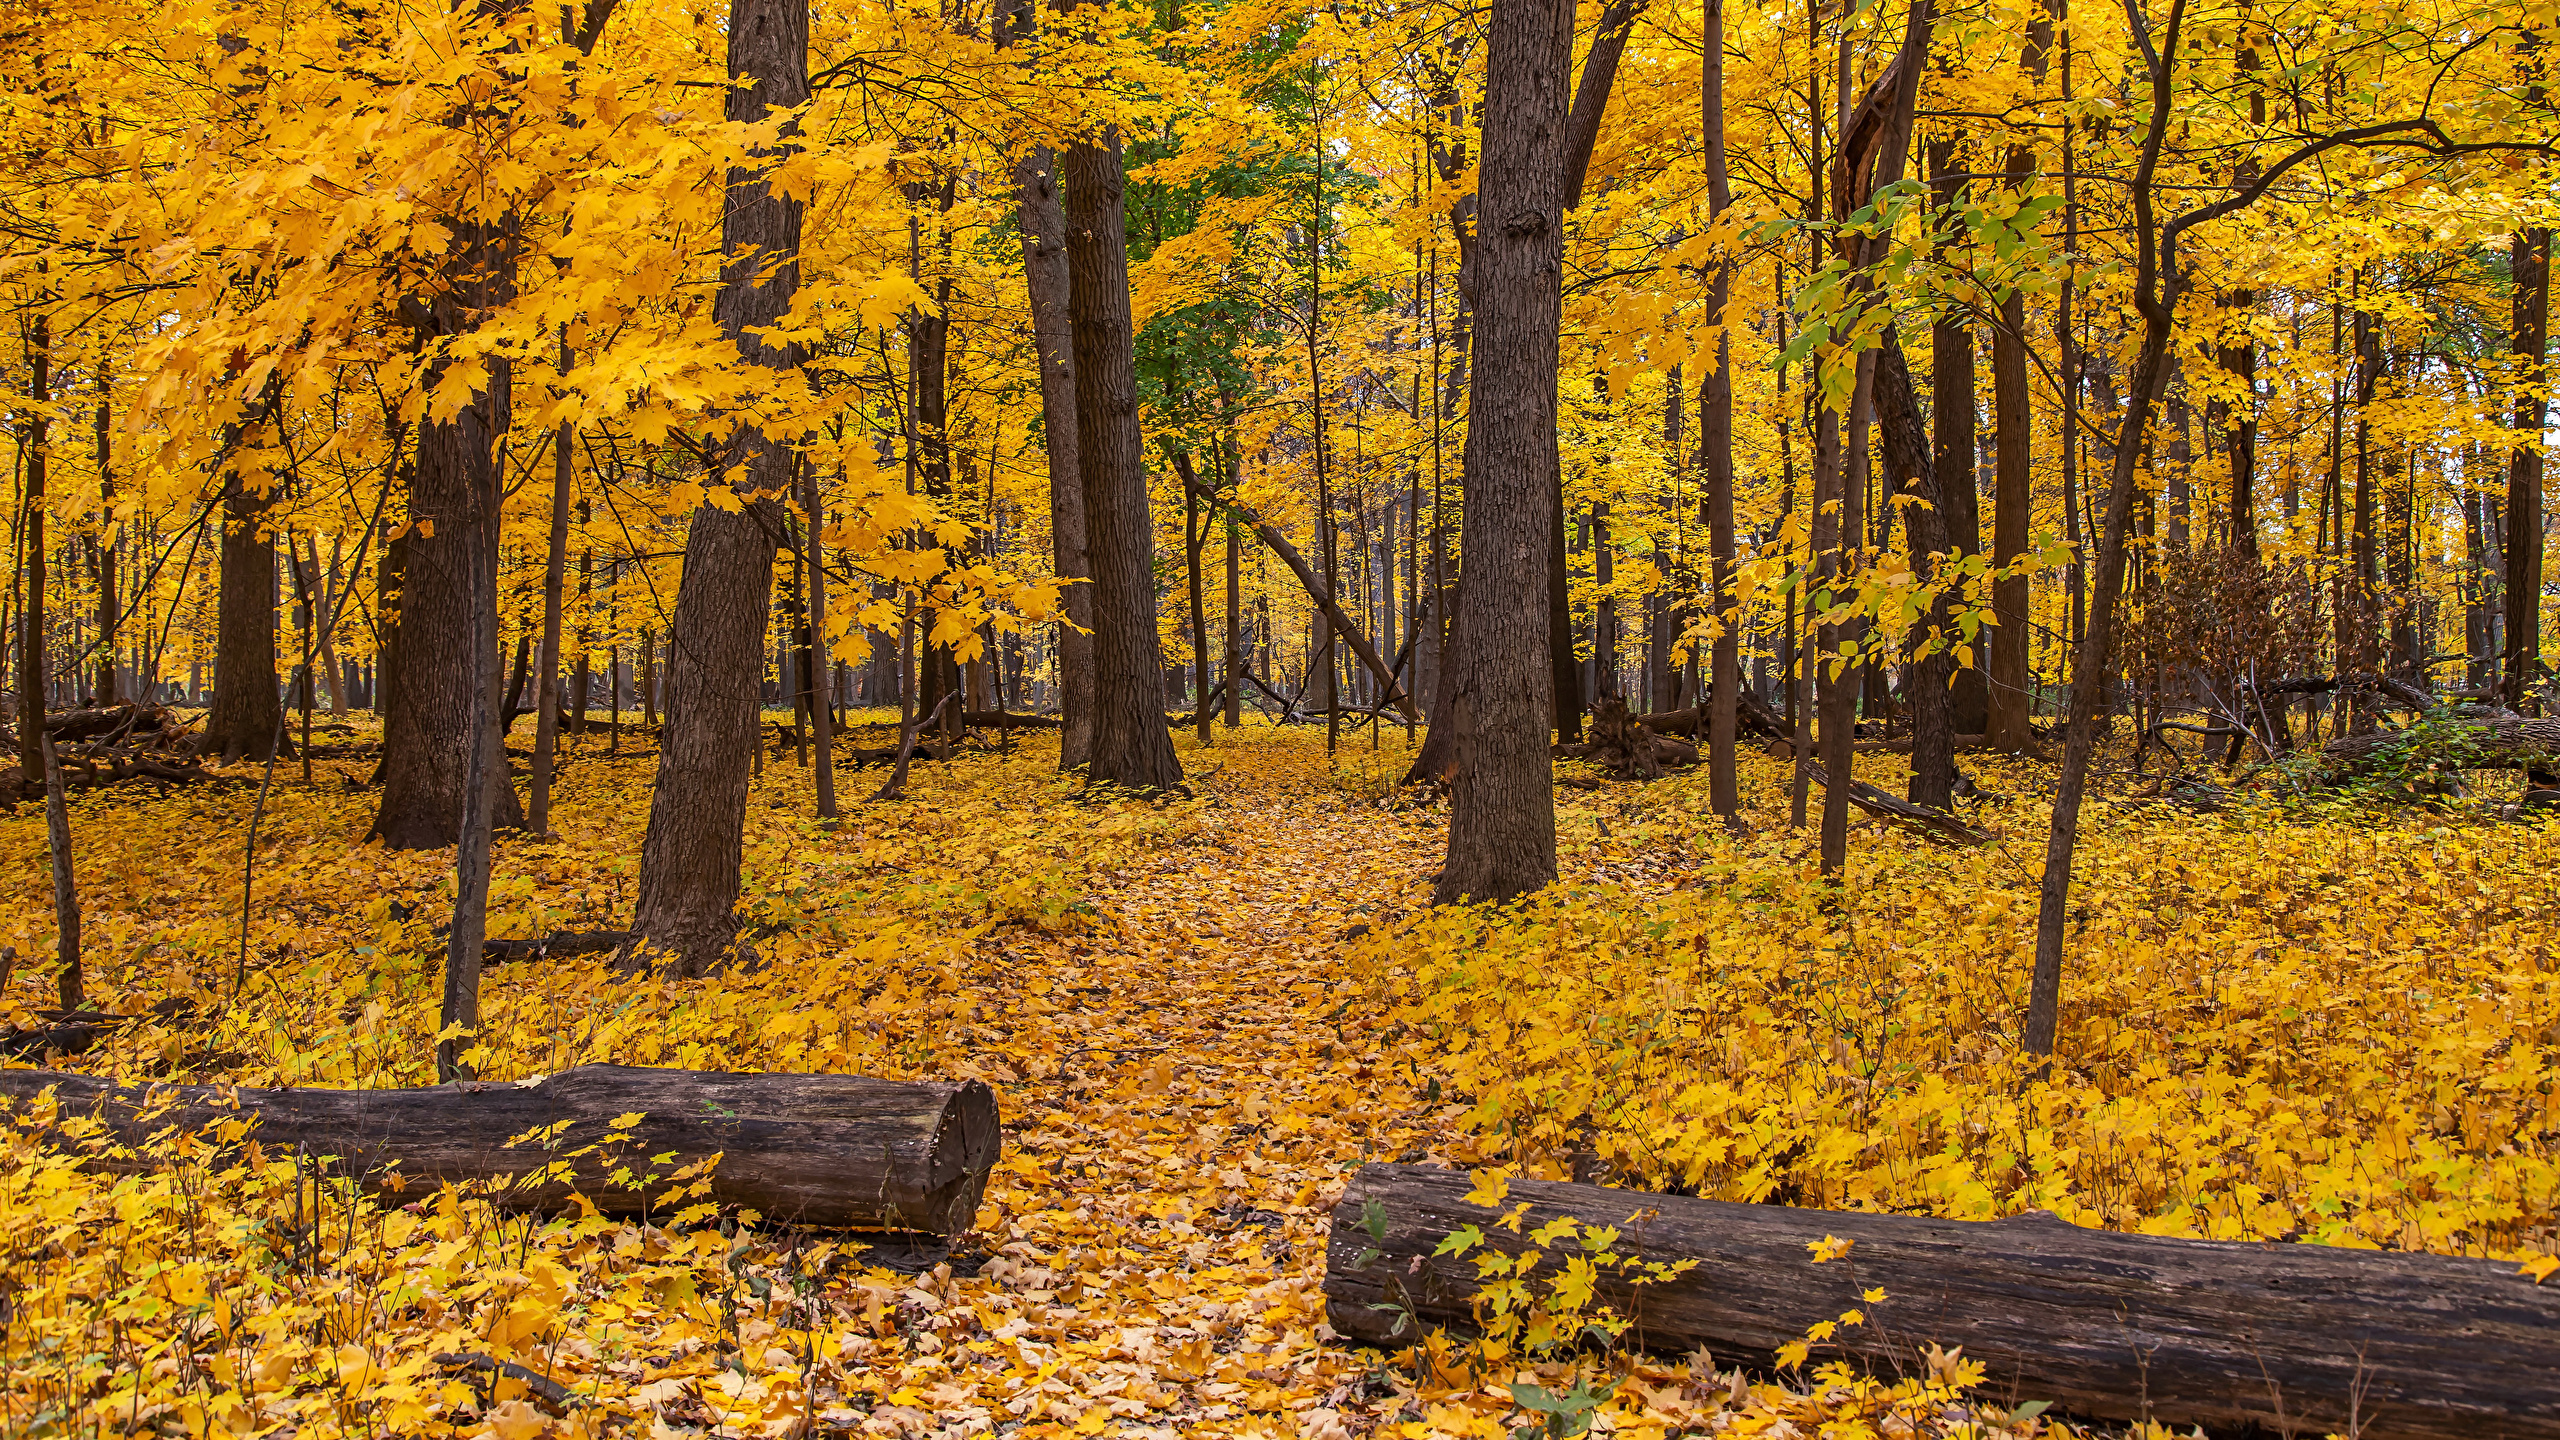 壁紙 2560x1440 アメリカ合衆国 秋 公園 シカゴ 木 木の葉 丸太 自然 ダウンロード 写真